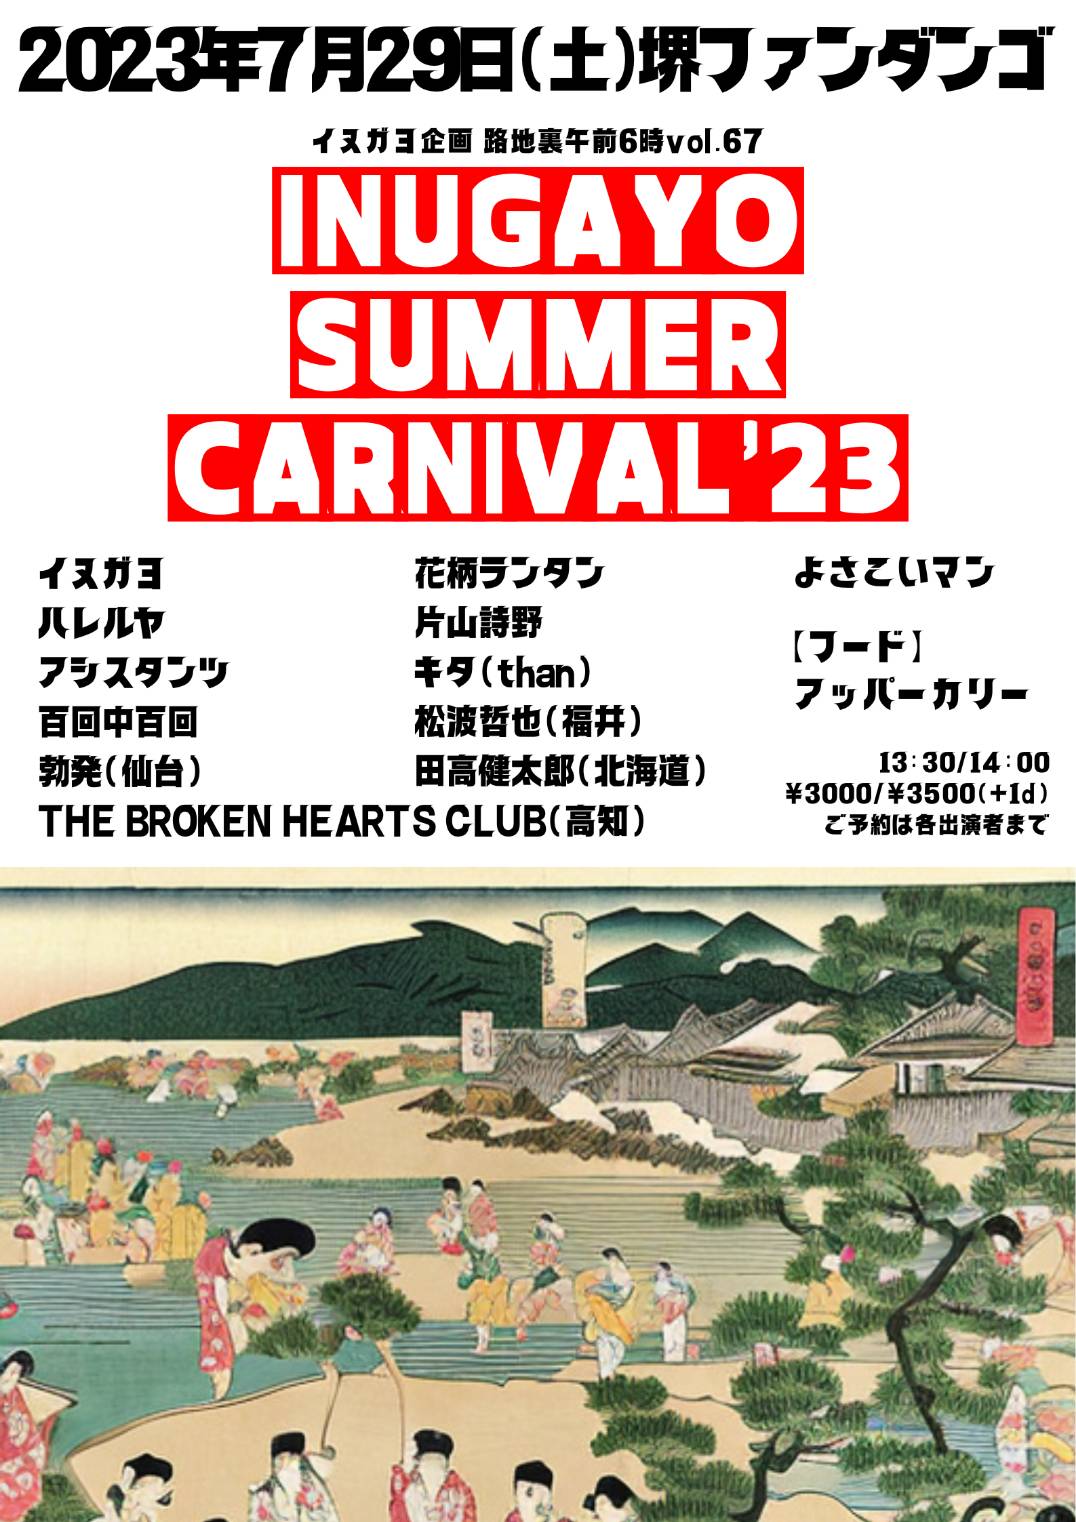 イヌガヨ企画『INUGAYO SUMMER CARNIVAL‘23』